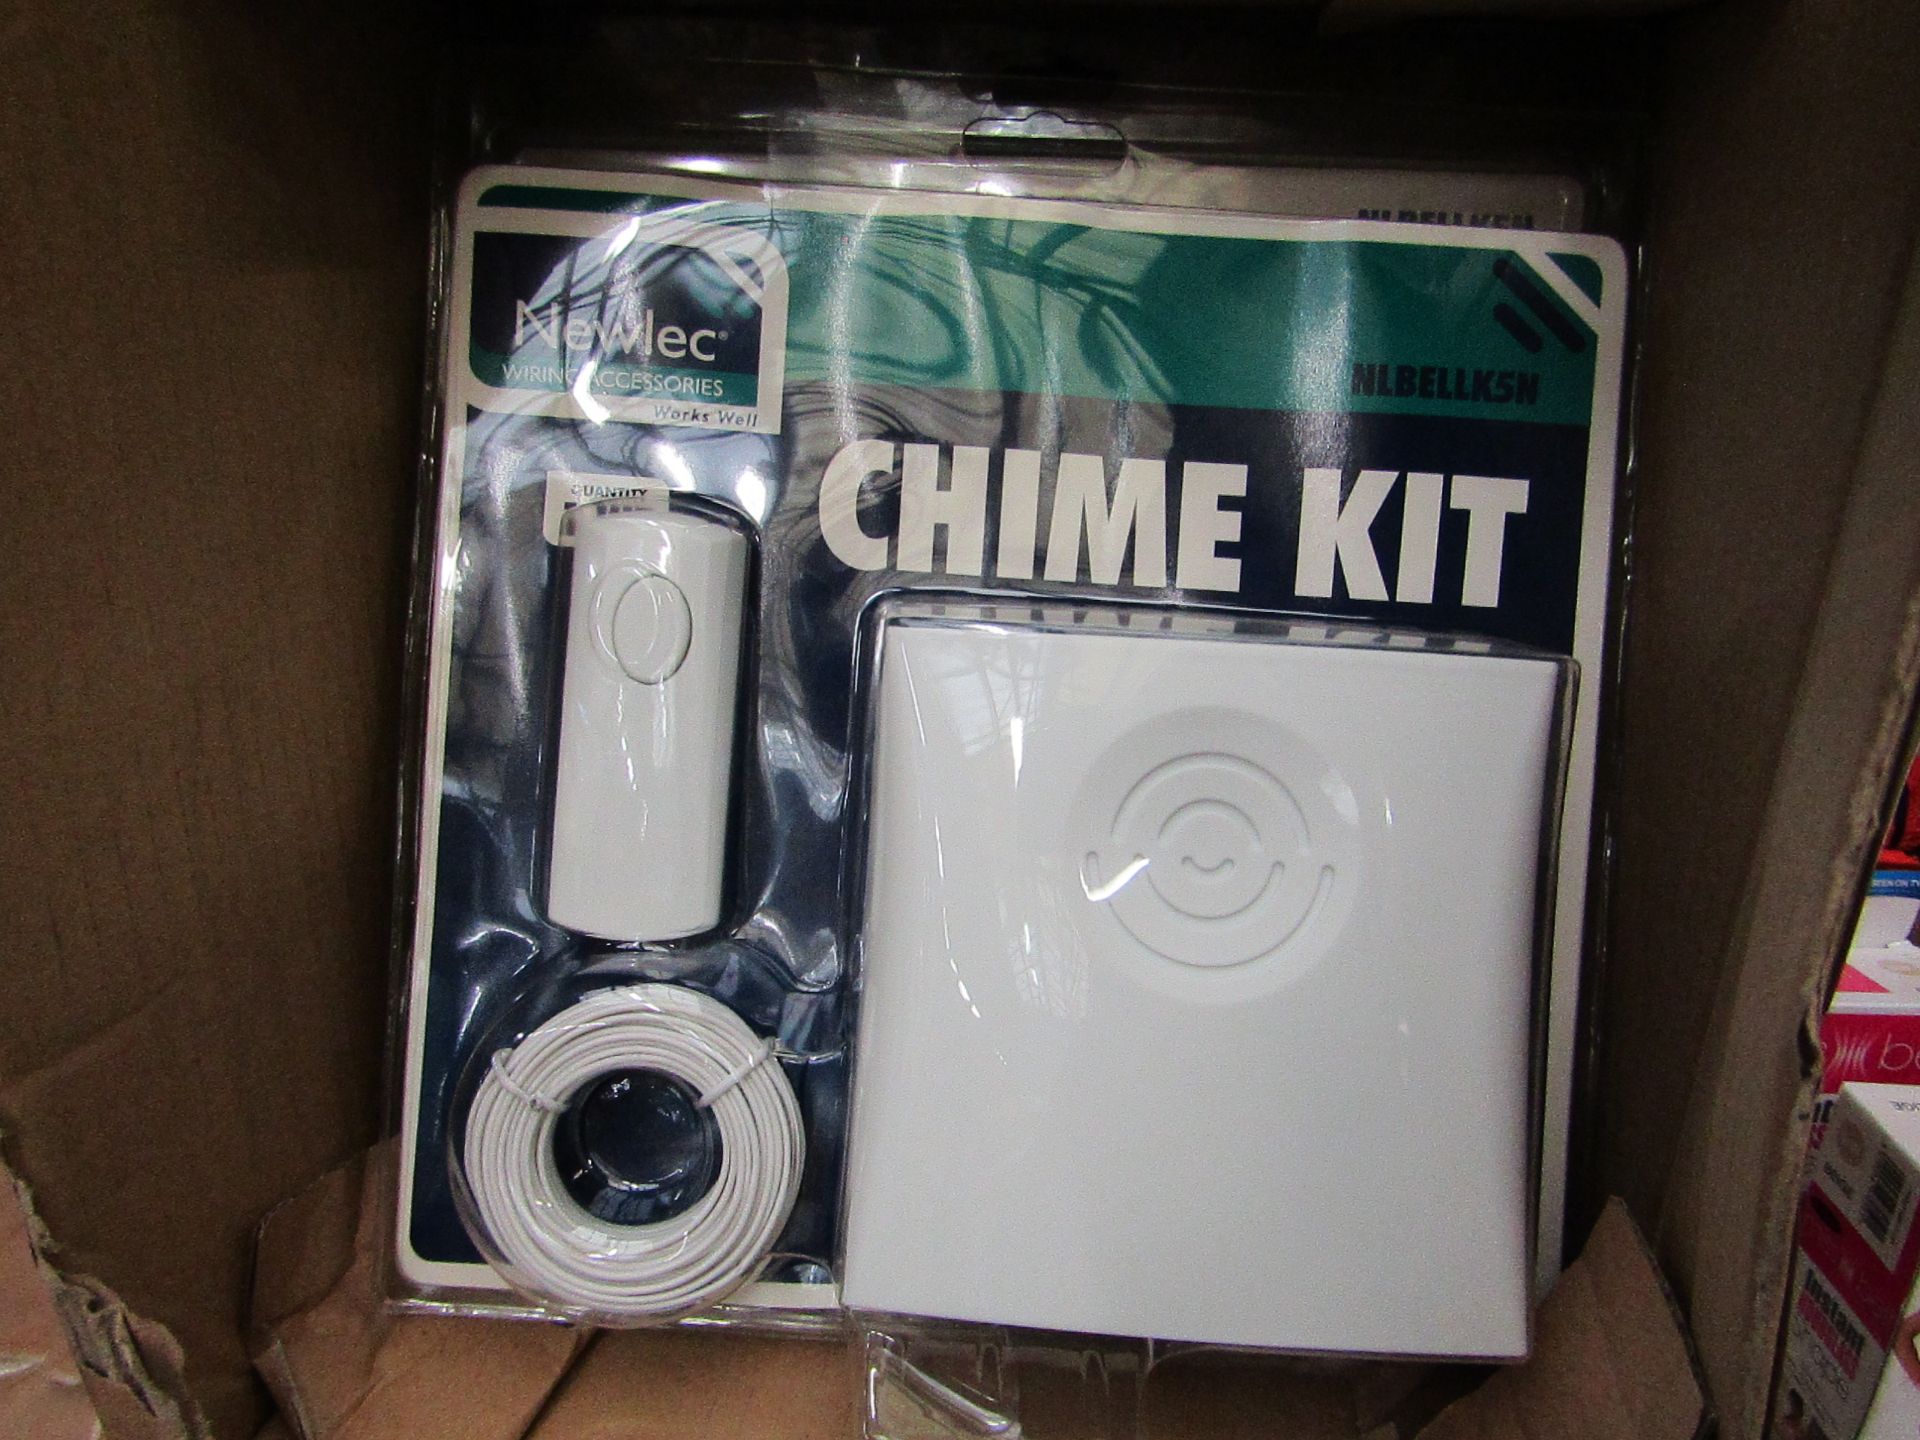 2x Newlec - Chime Kit - Unused & Packaged.